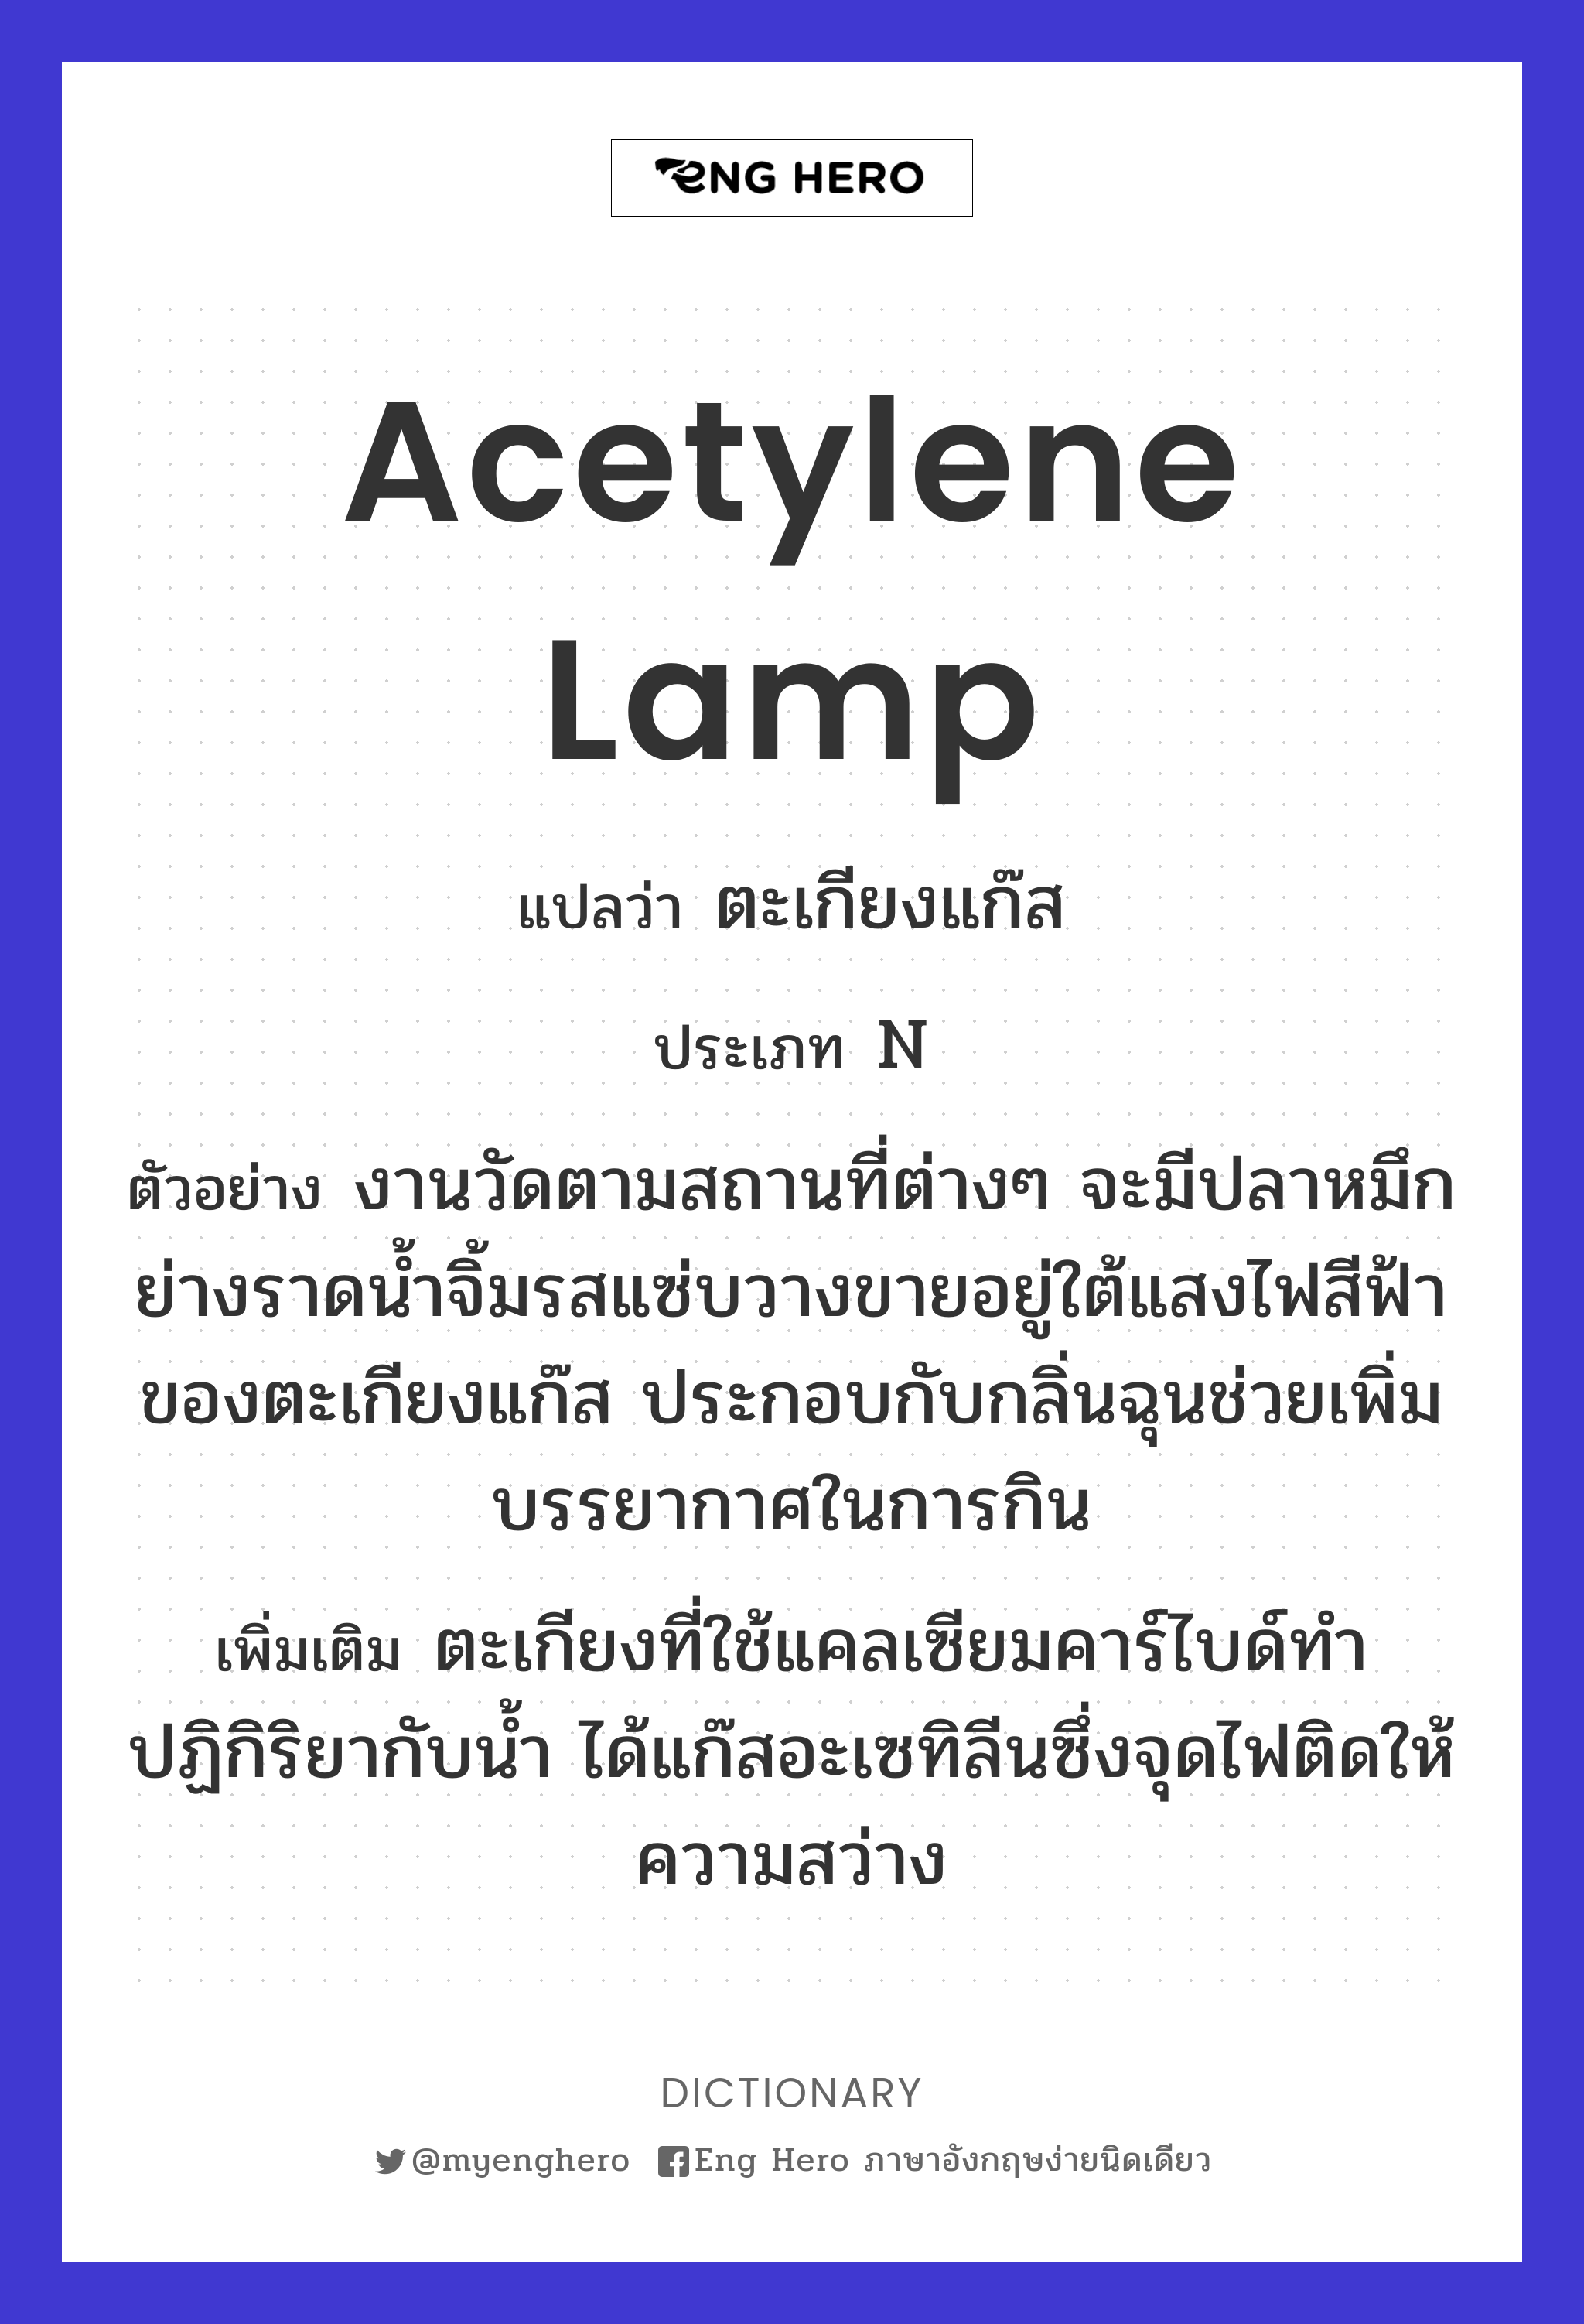 acetylene lamp